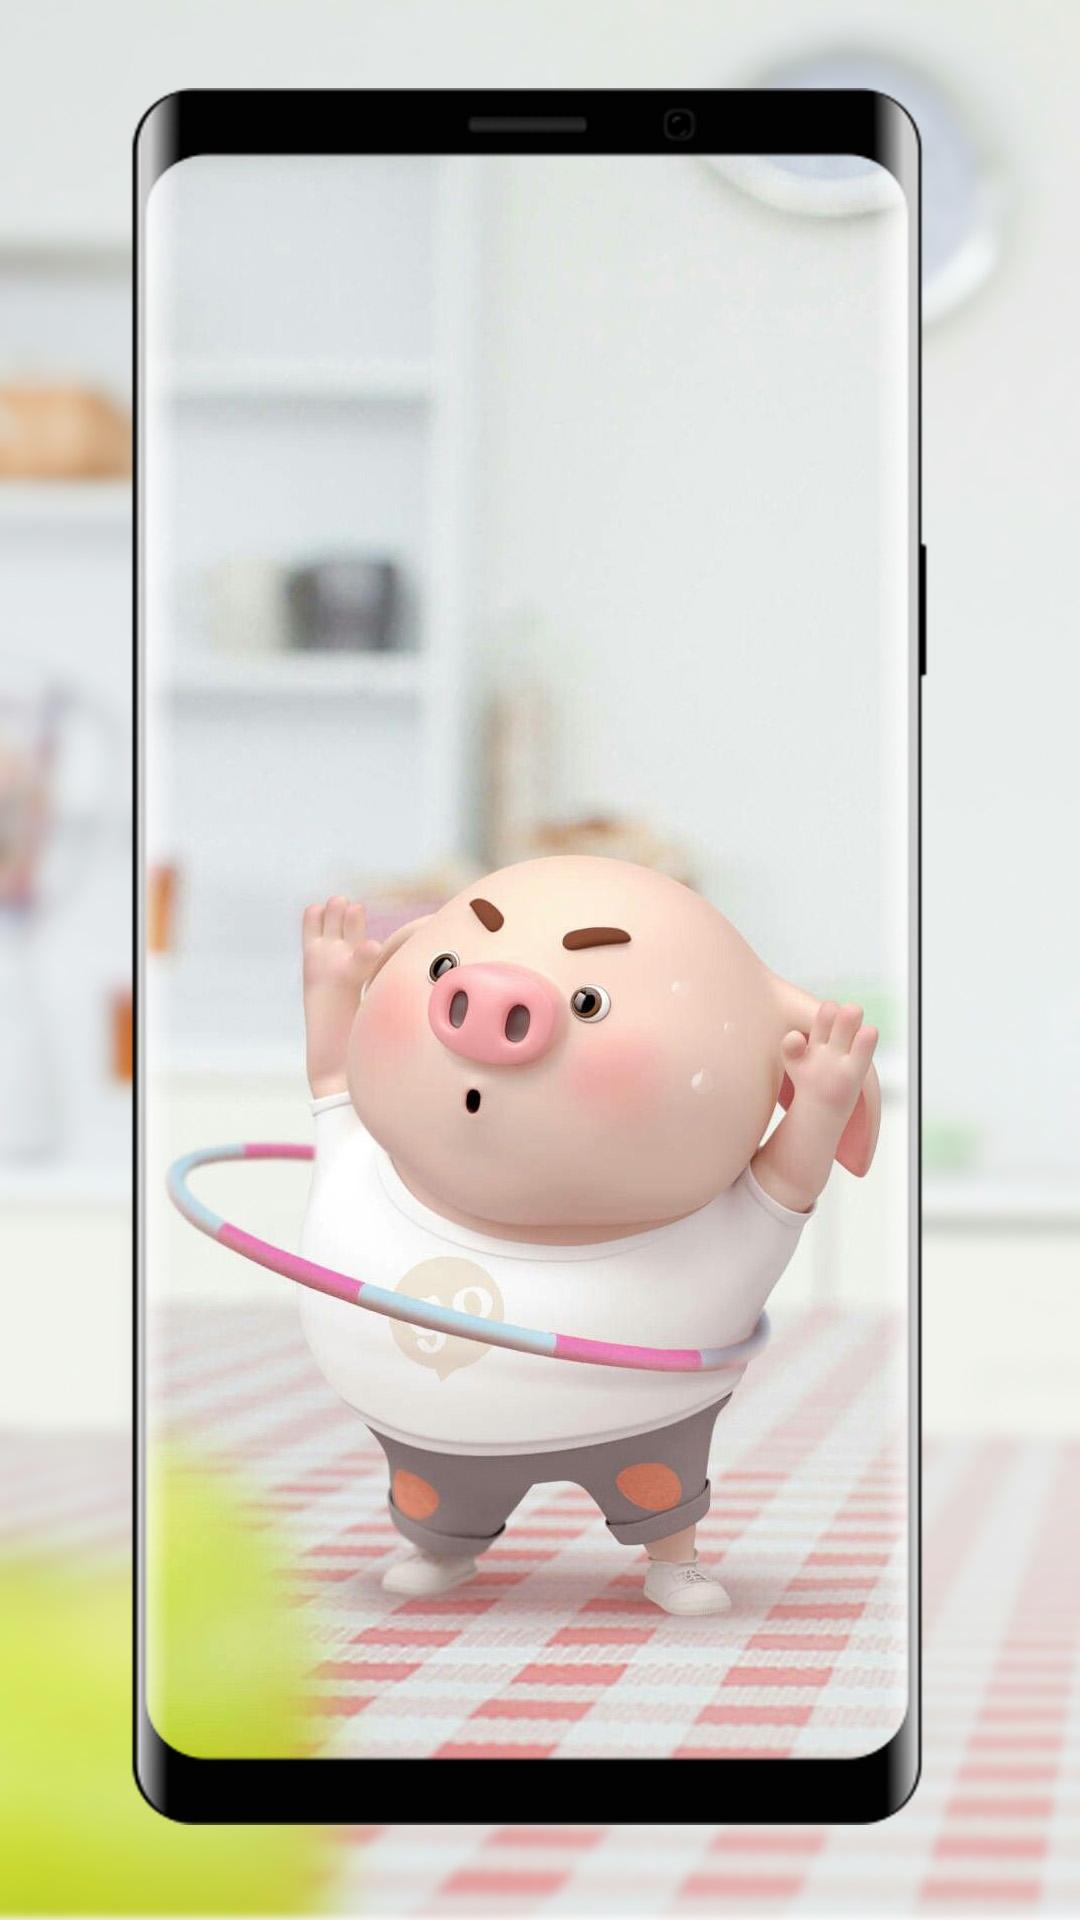 Cute Pig Wallpaper For Android Apk Download - piggy wallpaper hd fondos de piggy roblox